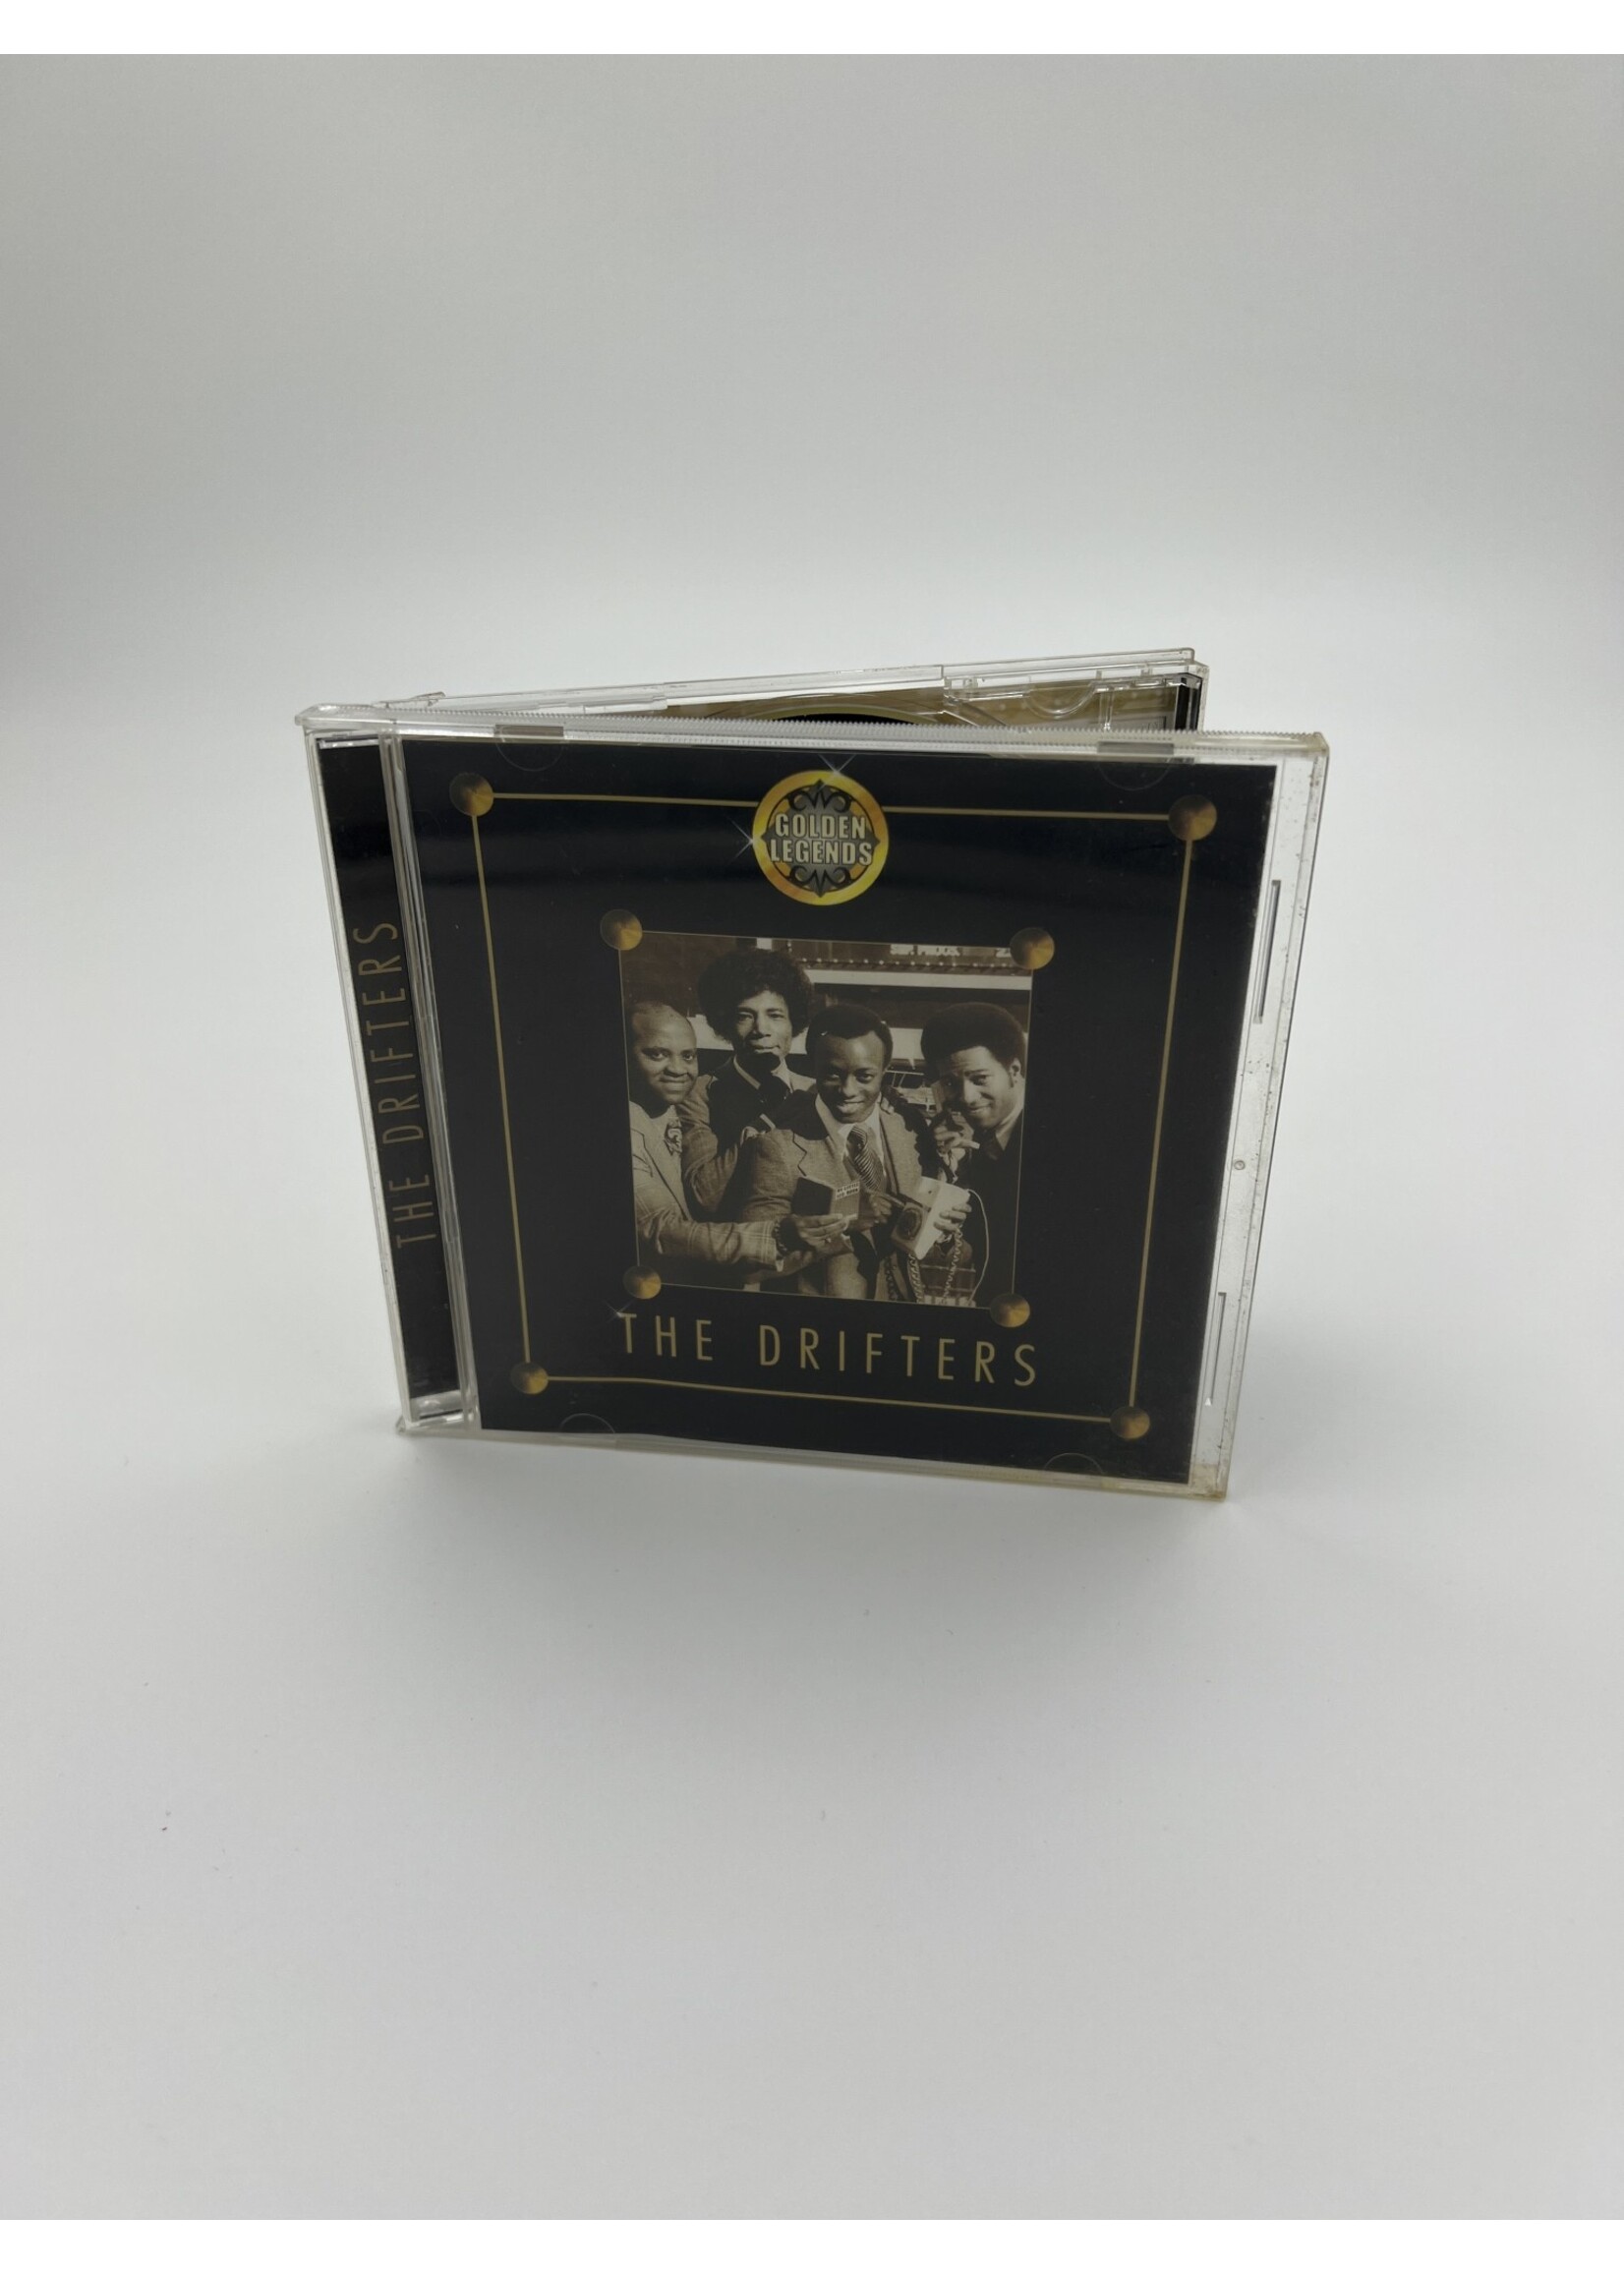 CD Golden Legends The Drifters CD